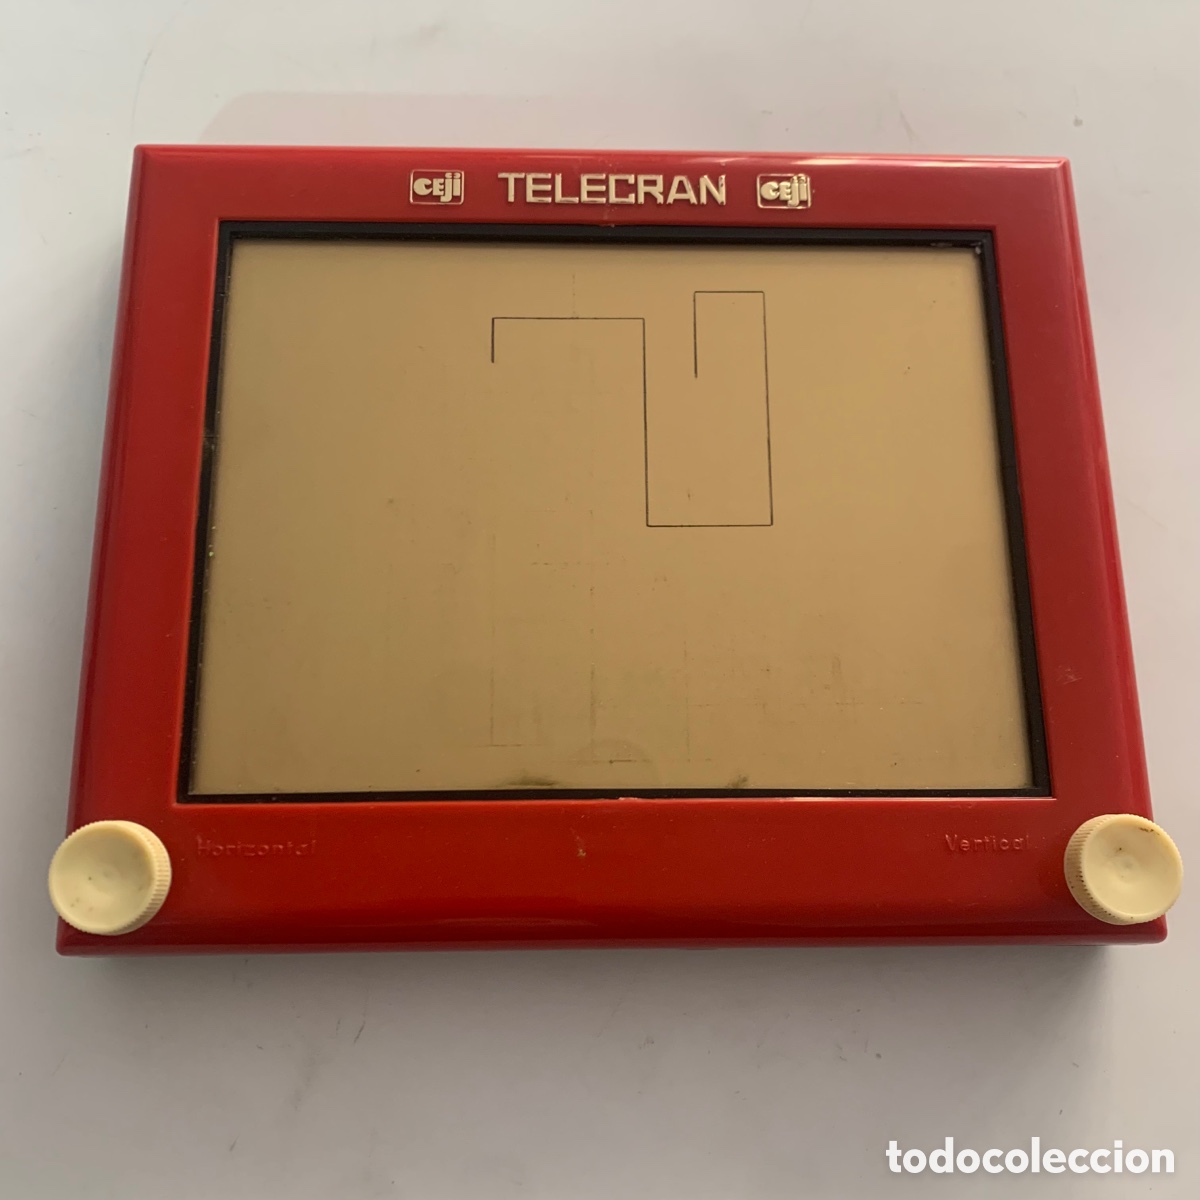 telesketch años 70-80 telecran ceji - Acheter Autres jouets anciens et jeux  de collection sur todocoleccion